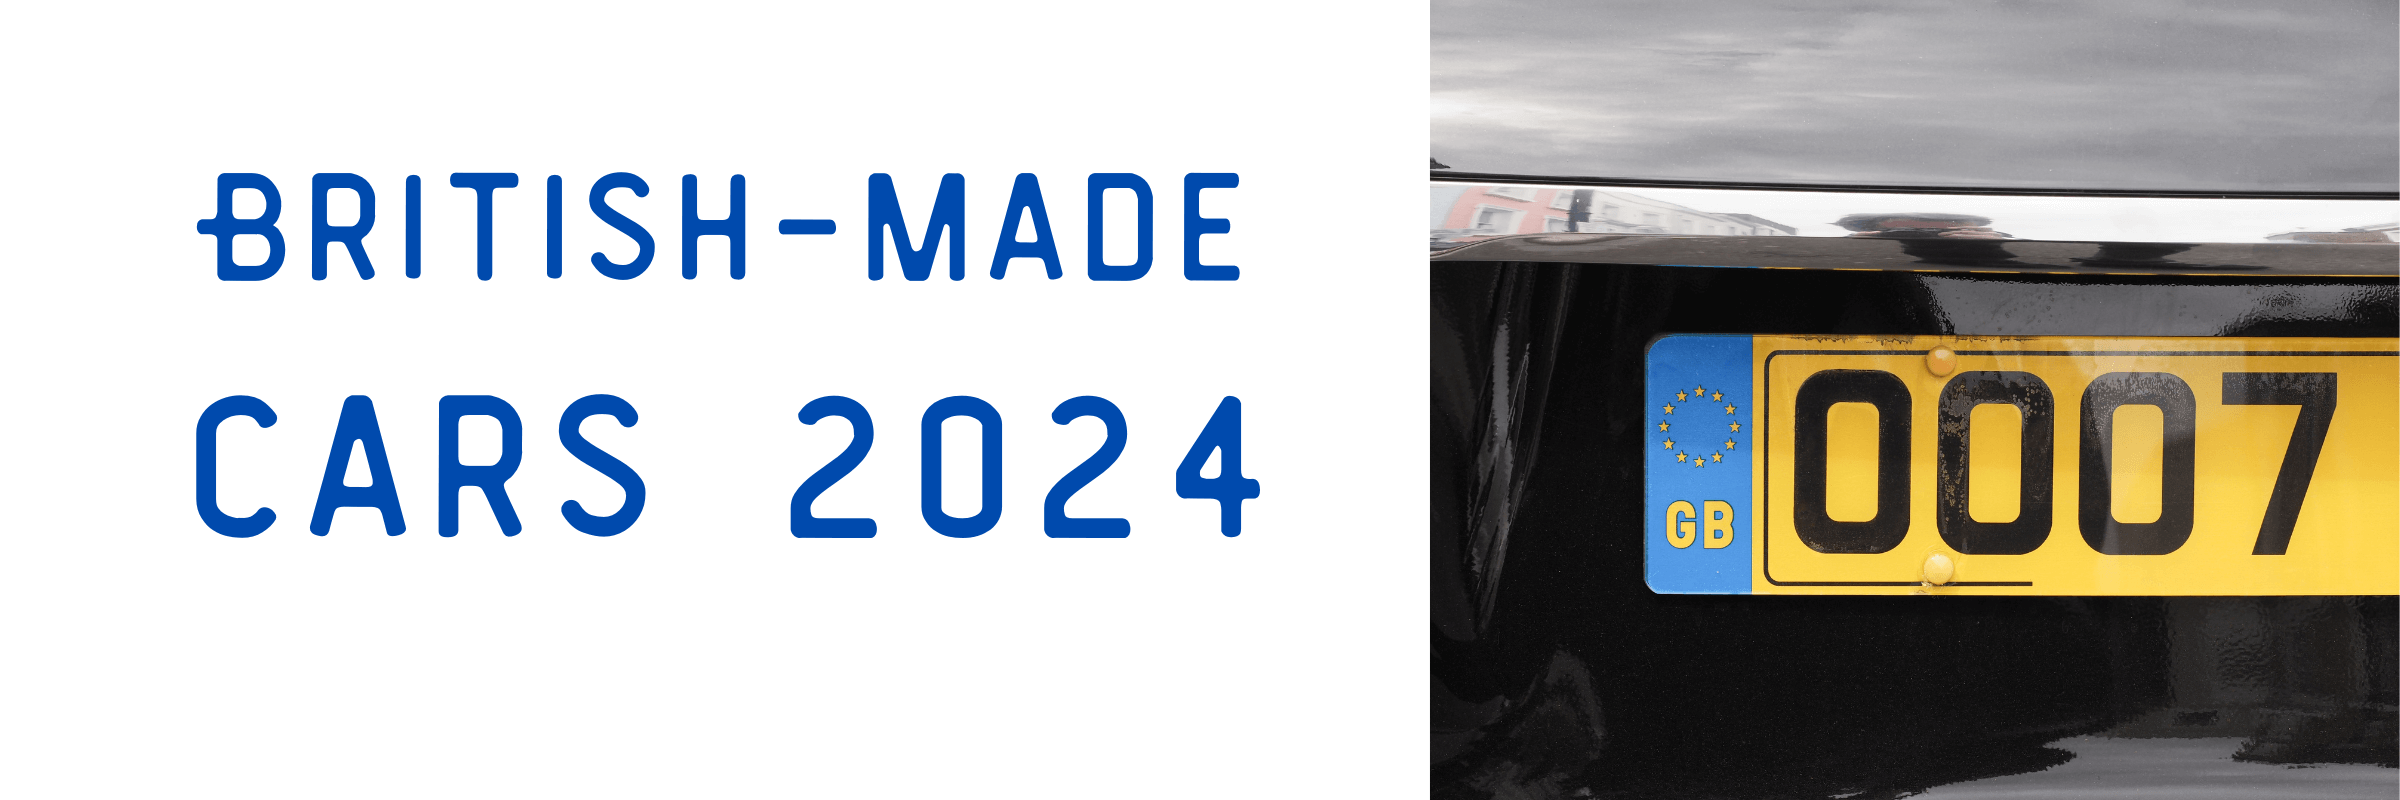 British-made Cars 2024 (1)